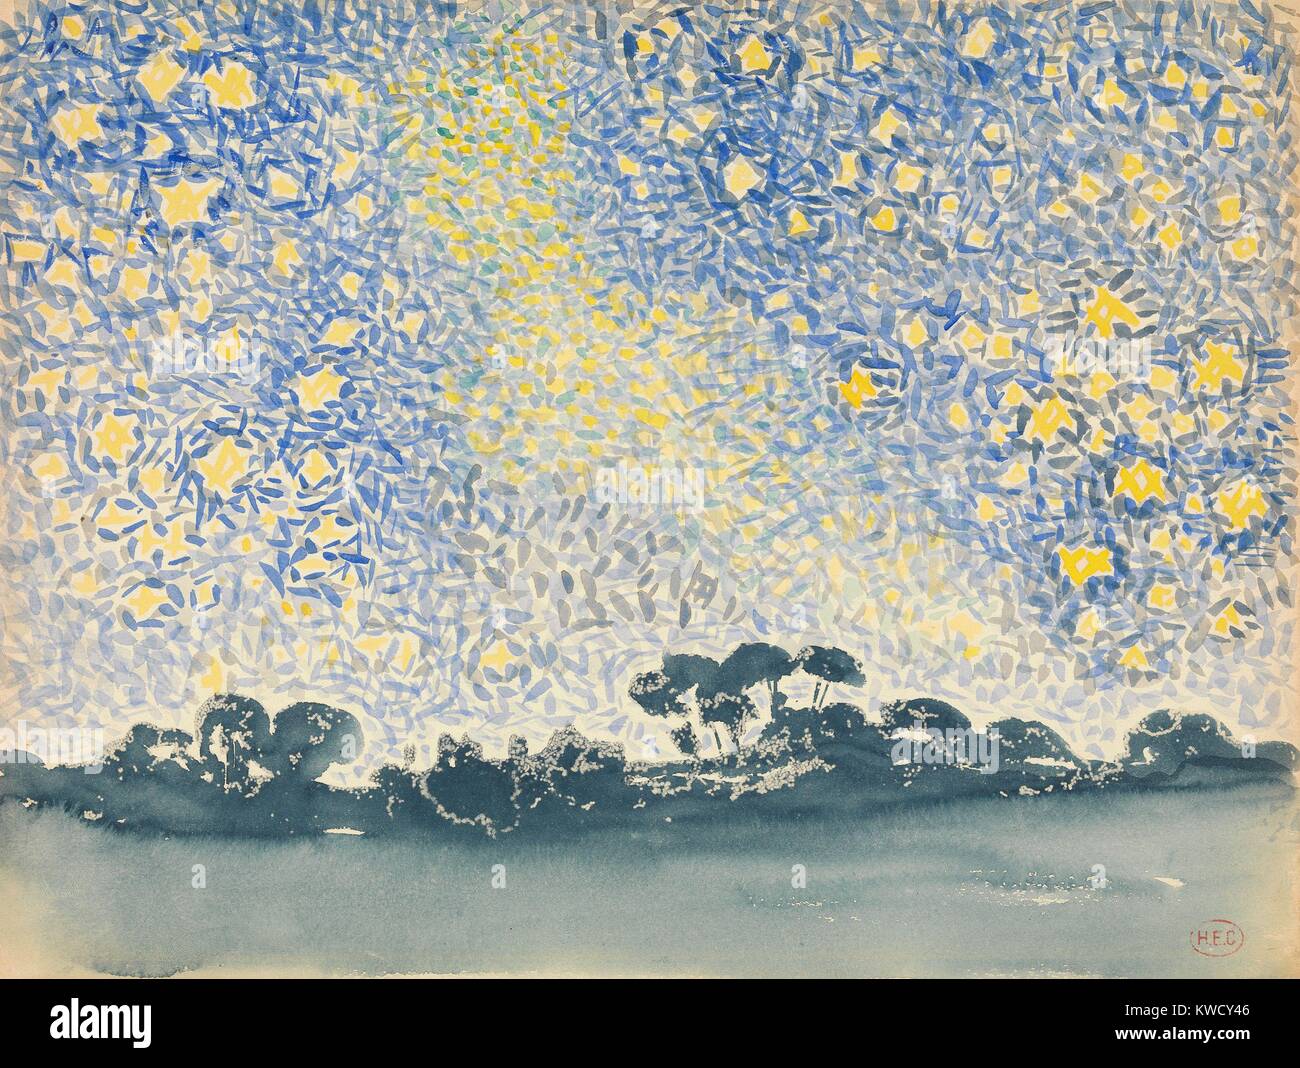 Paysage avec des Stars, par Henri-Edmond Cross, 1905-1908, de l'aquarelle des néo-impressionnistes français. L'étoile-striées sky combine les touches de bleu clair et jaune au-dessus d'une peinture de paysage tout simplement terne (BSLOC 2017 5 107) Banque D'Images